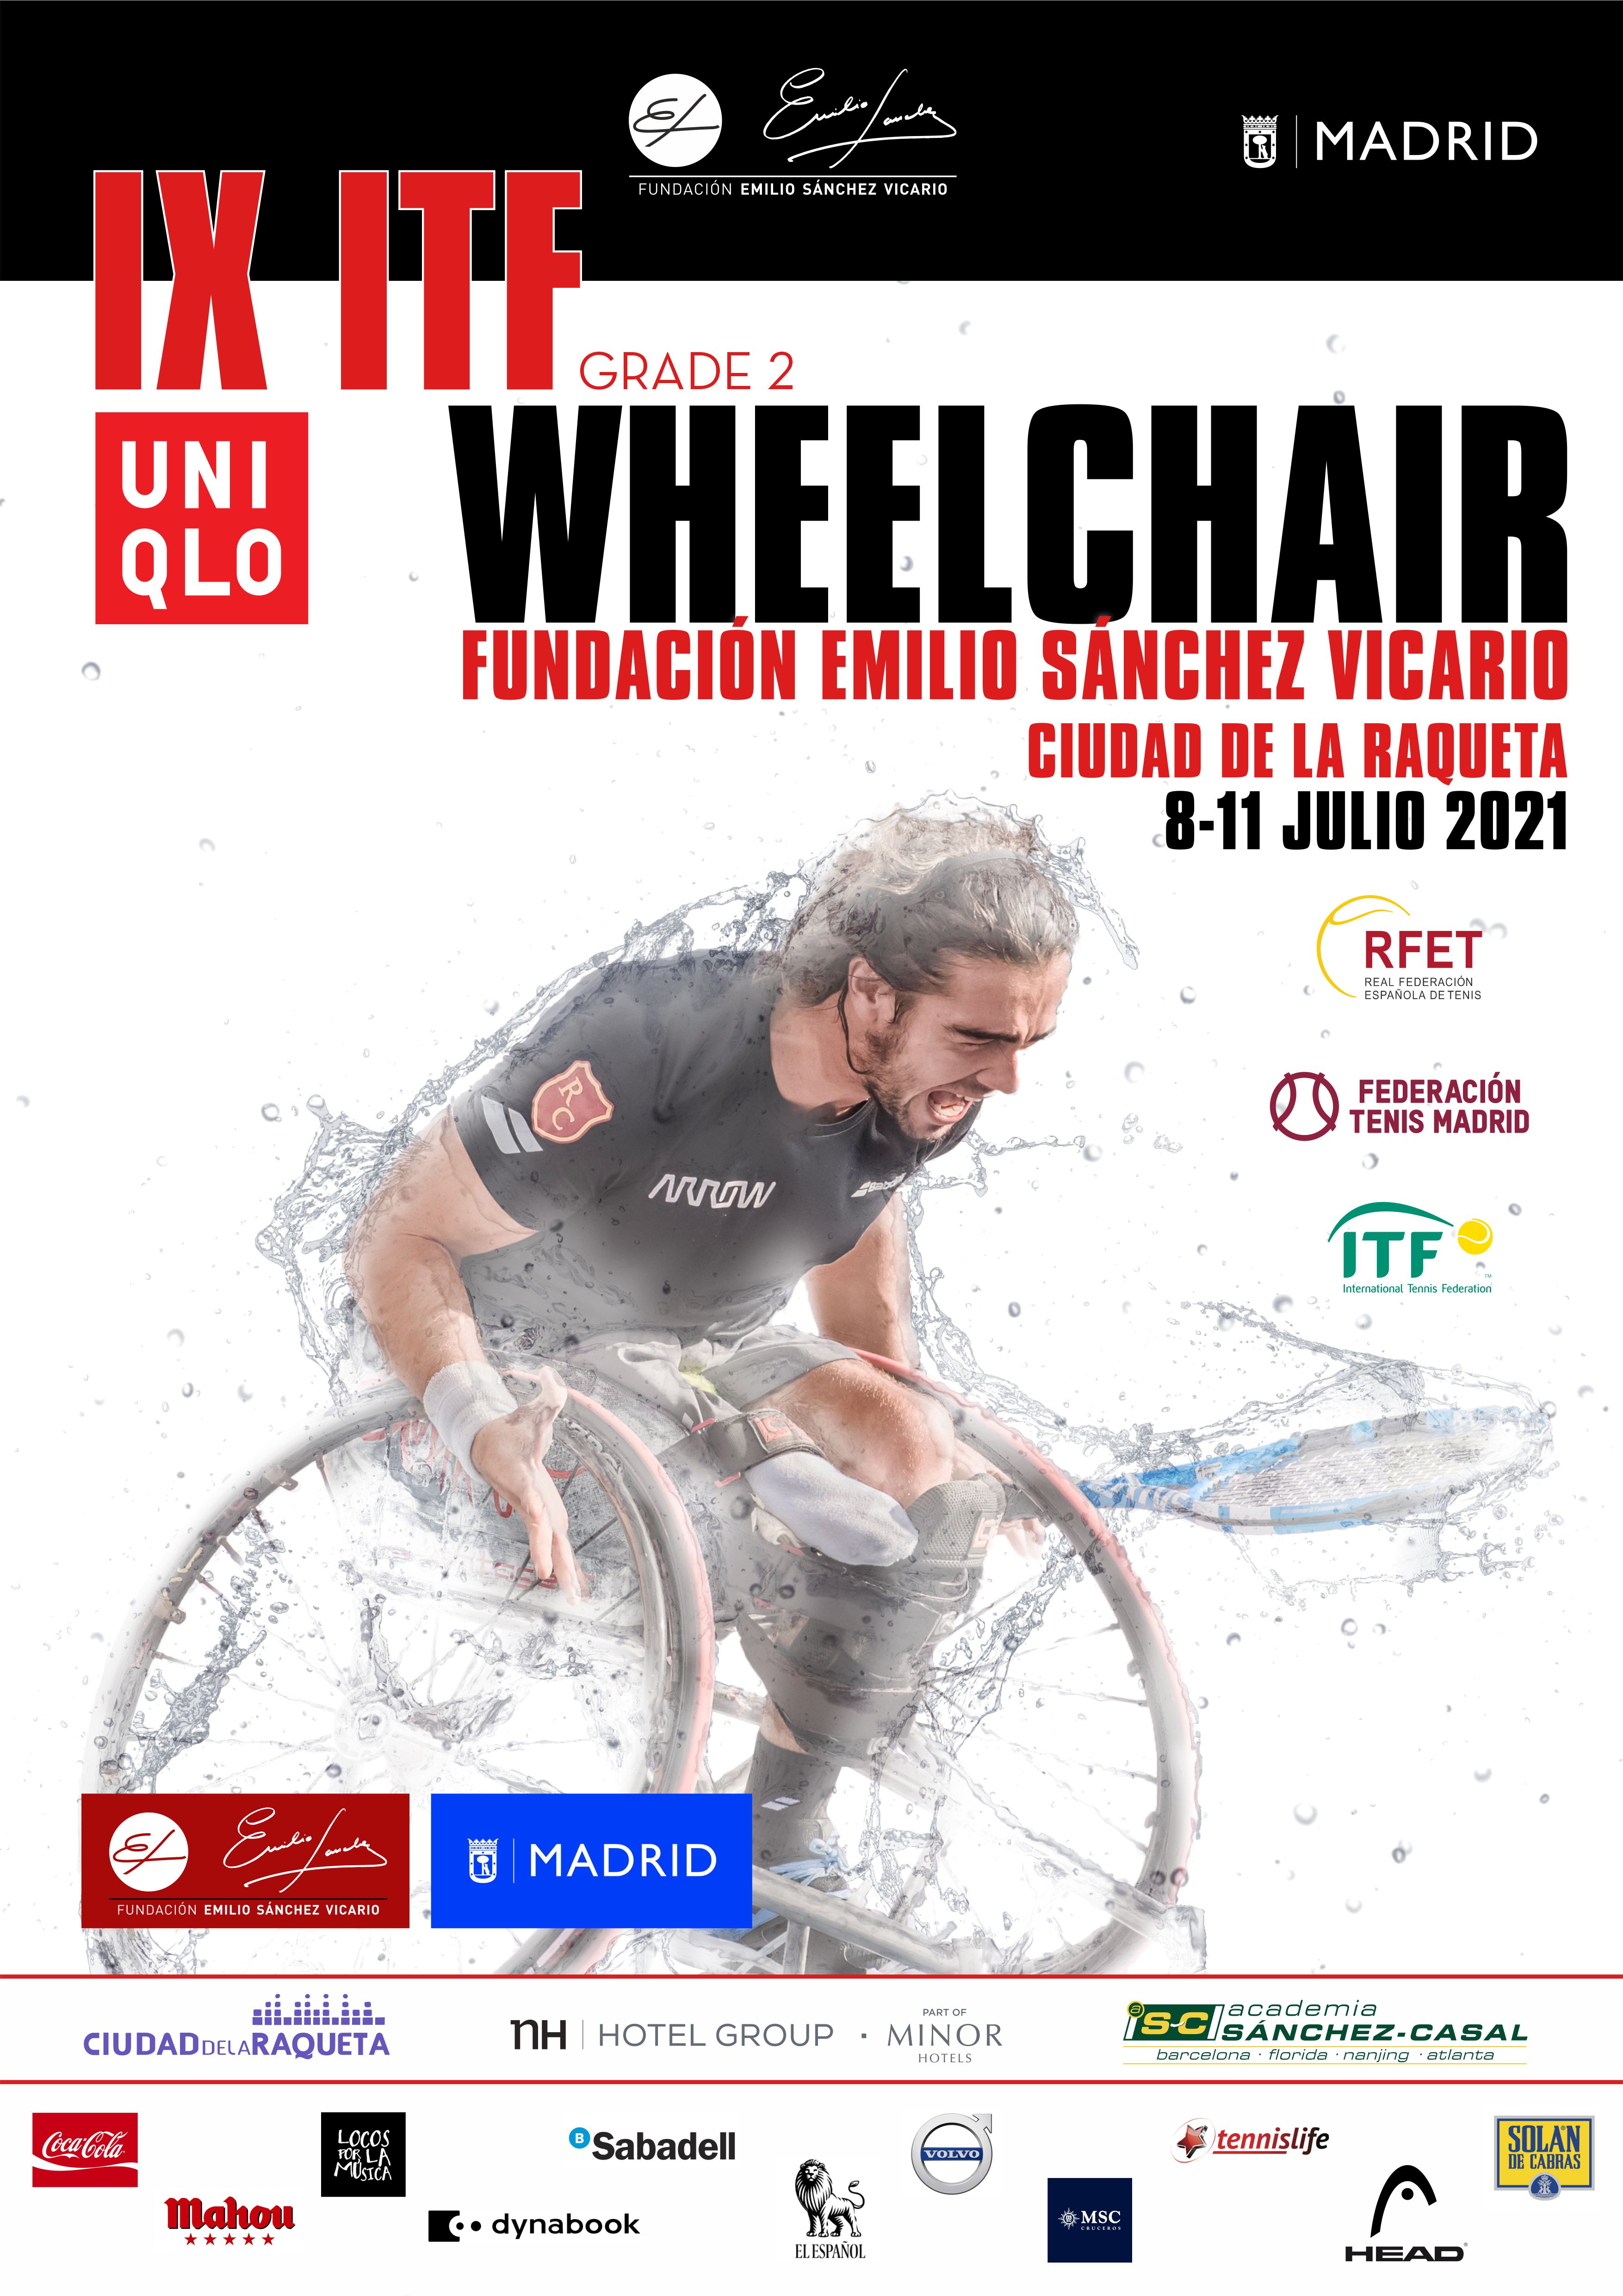 Image for El IX ITF Wheelchair Fundación Emilio Sánchez Vicario, asciende a Grado 2 y contará con Dani Caverzaschi y Martín de la Puente.